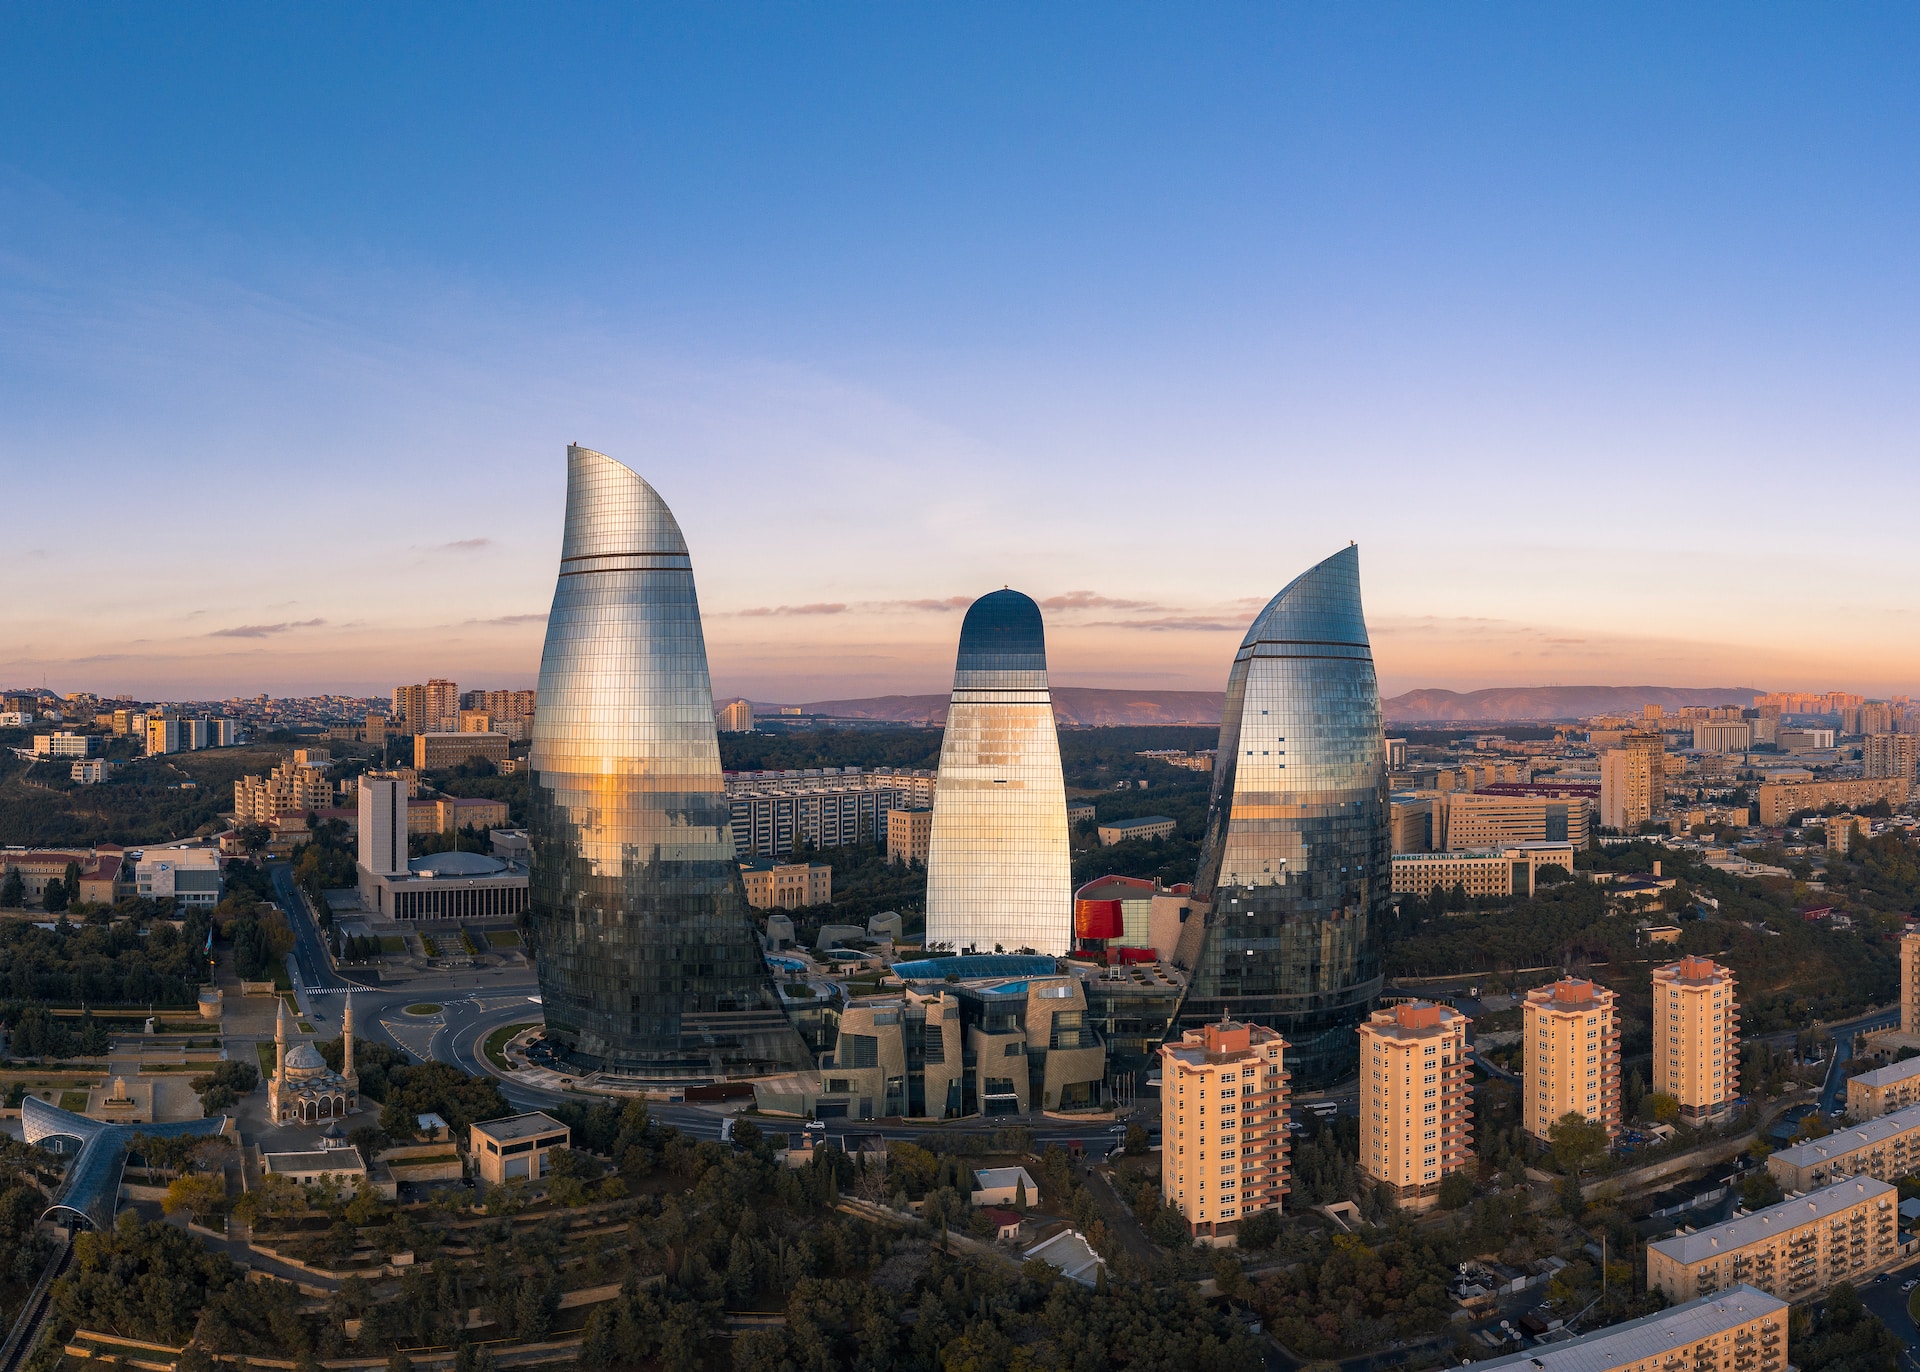 Azerbeidzjan stelt organisatiecomité volgende klimaattop voor: oliebonzen, omstreden ambtenaren en geen enkele vrouw